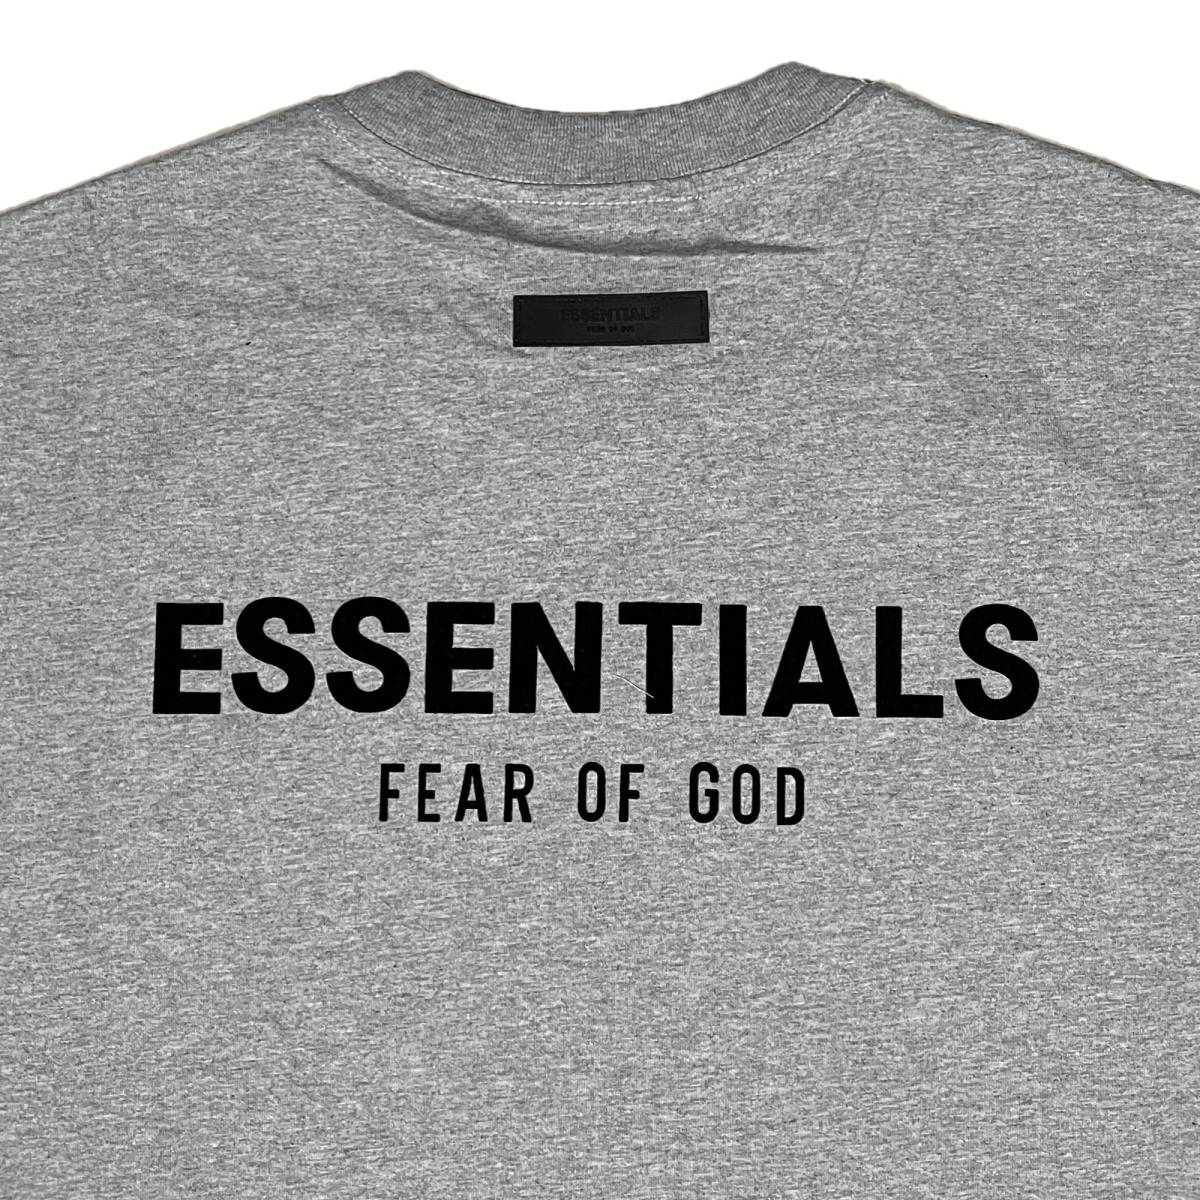 [並行輸入品] FEAR OF GOD FOG ESSETIALS エッセンシャルズ バックロゴ 半袖 Tシャツ (ダークグレー) (XL)